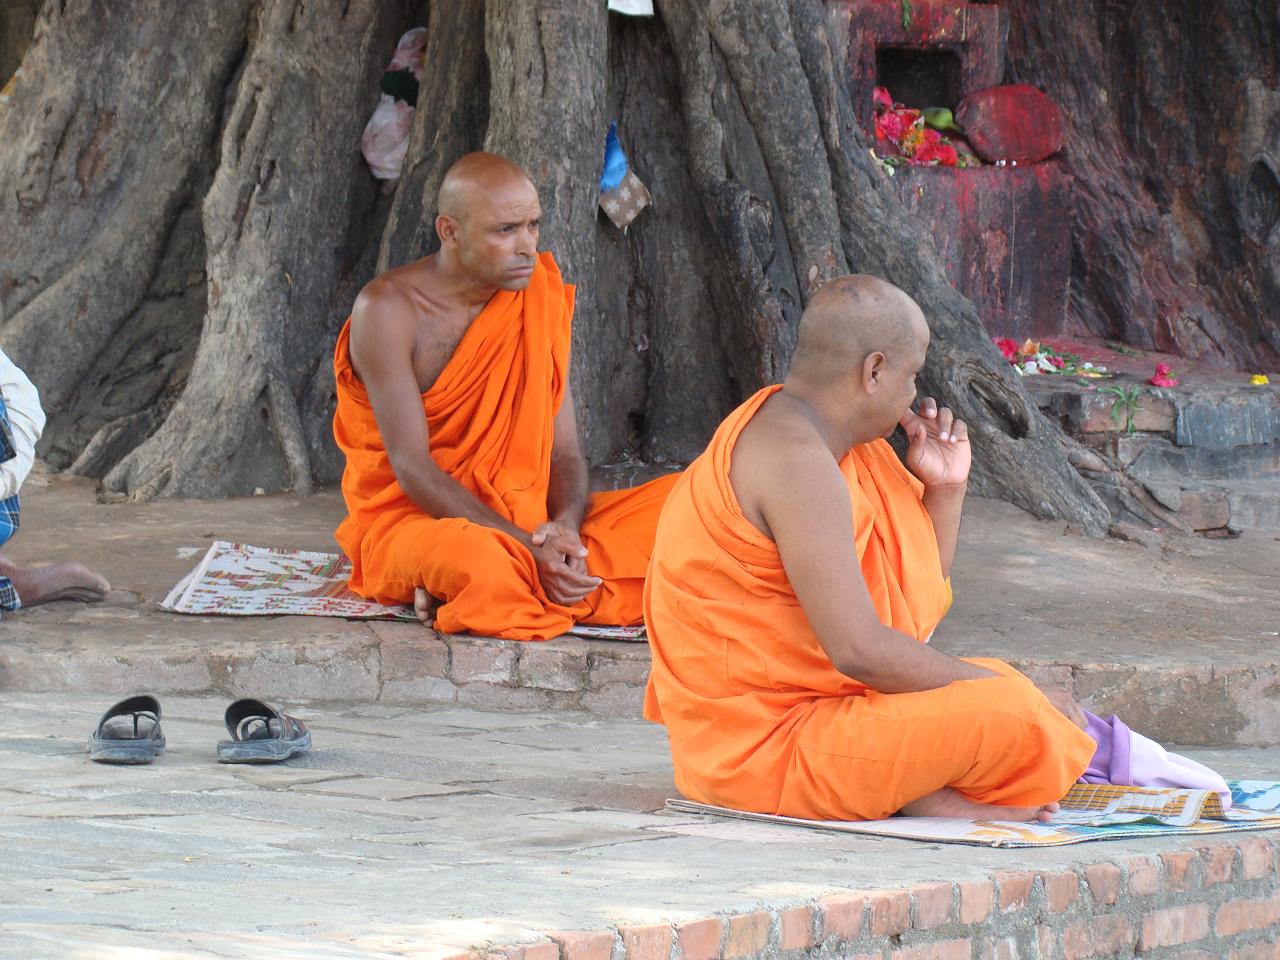 Буддійські монахи в Лумбіні (місце народження Будди, Непал). Фото зроблено здалеку з 8-кратним оптичним зумом, щоб не відволікати ченців.